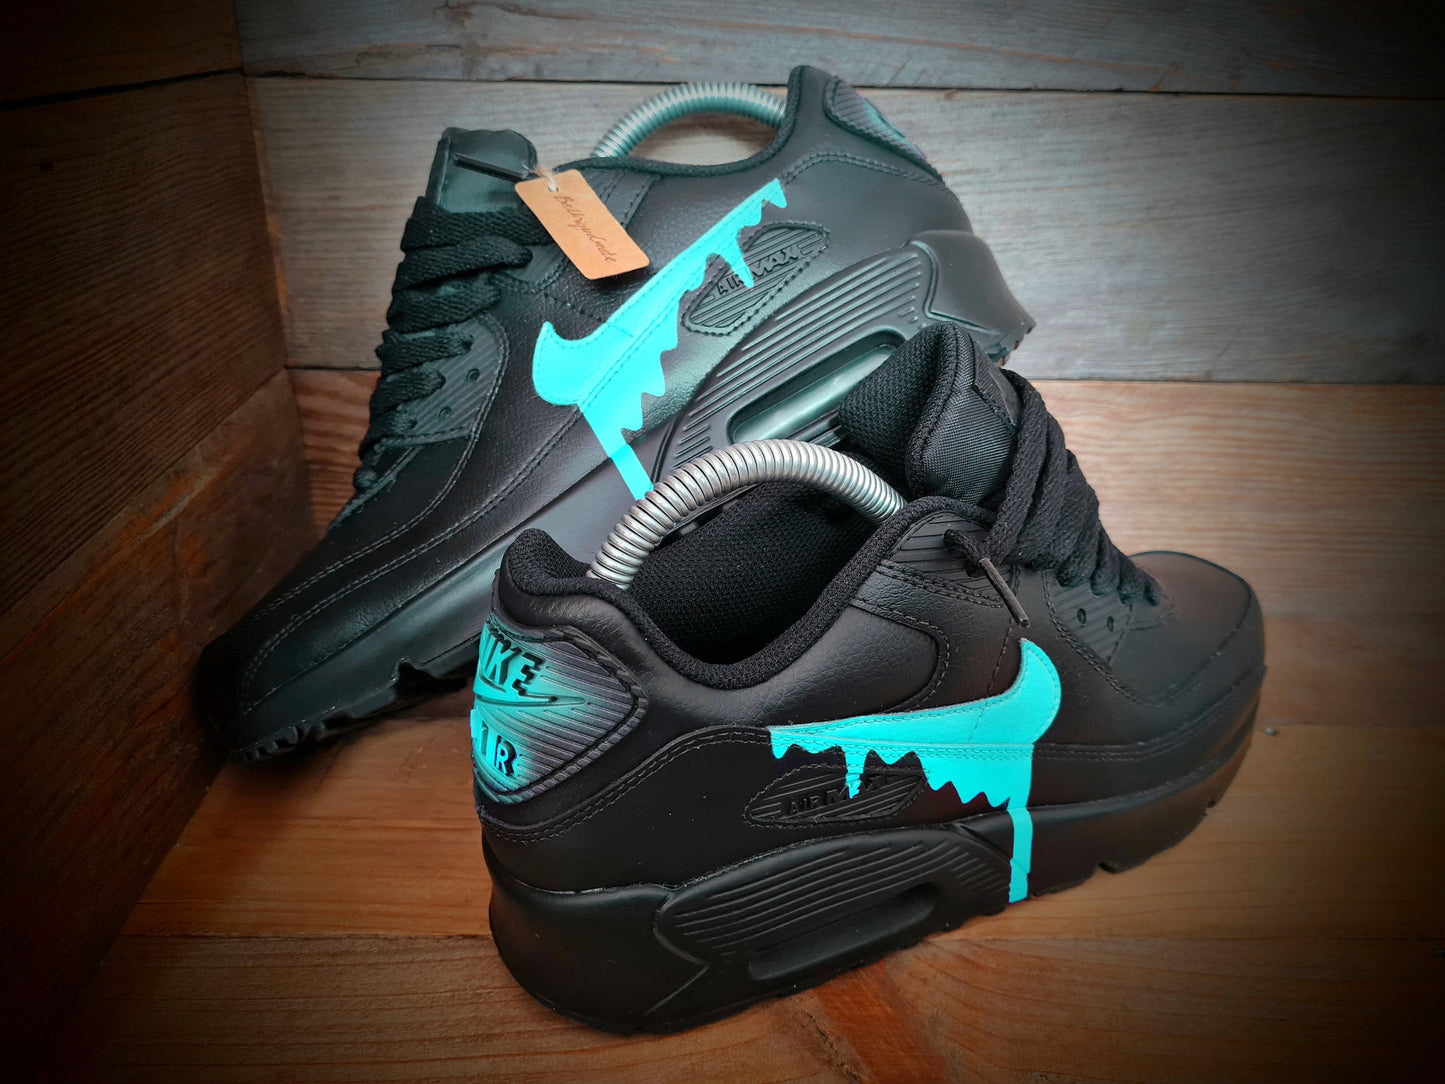 Custom Painted Air Max 90/Sneakers/Shoes/Kicks/Premium/Personalised/Aqua Drip